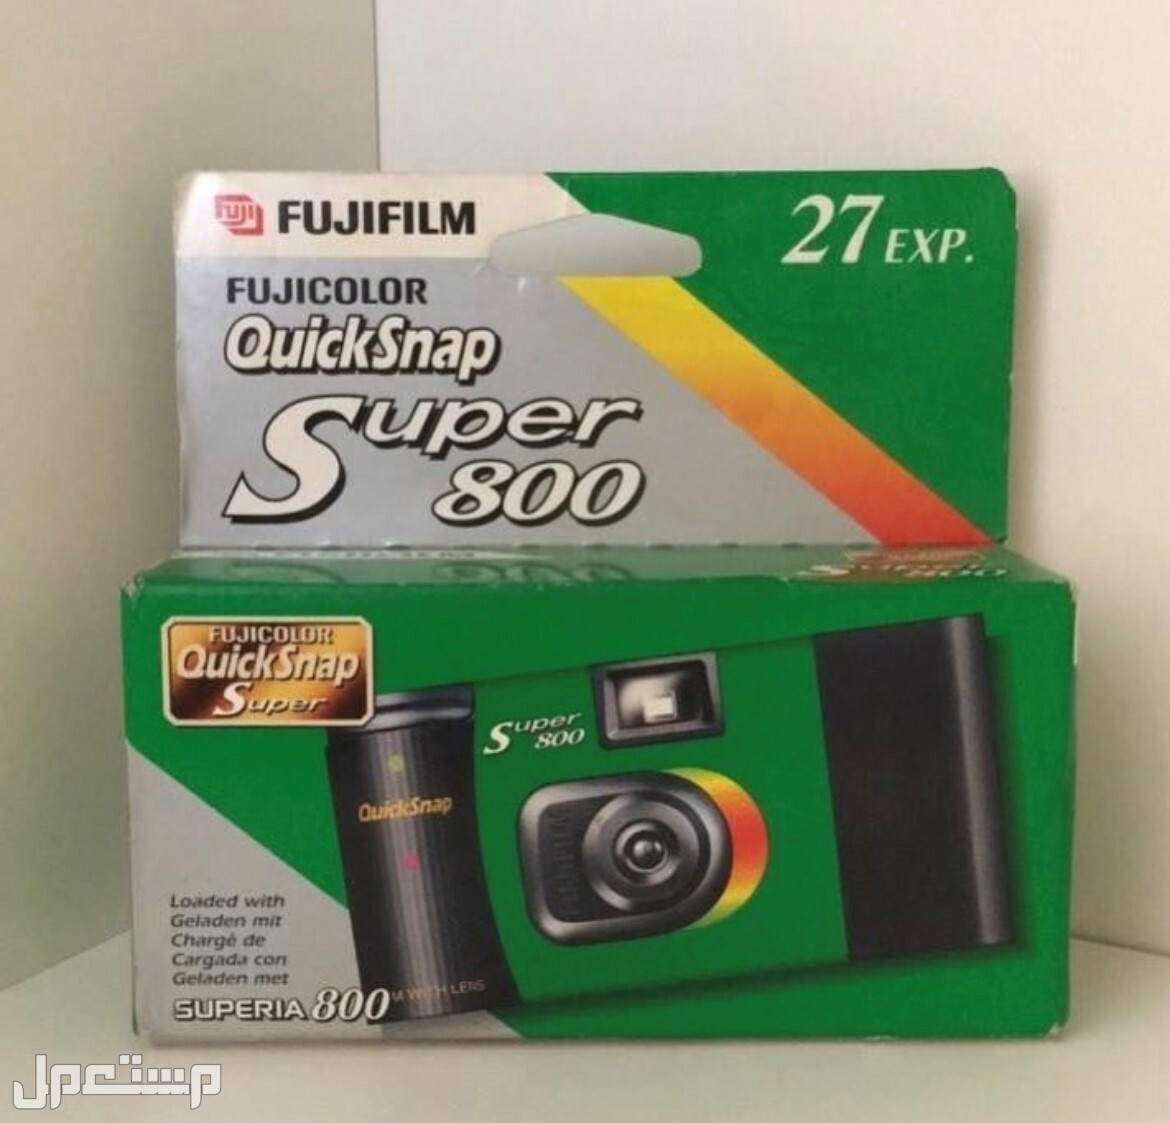 للبيع كاميرات تحميض قديمة